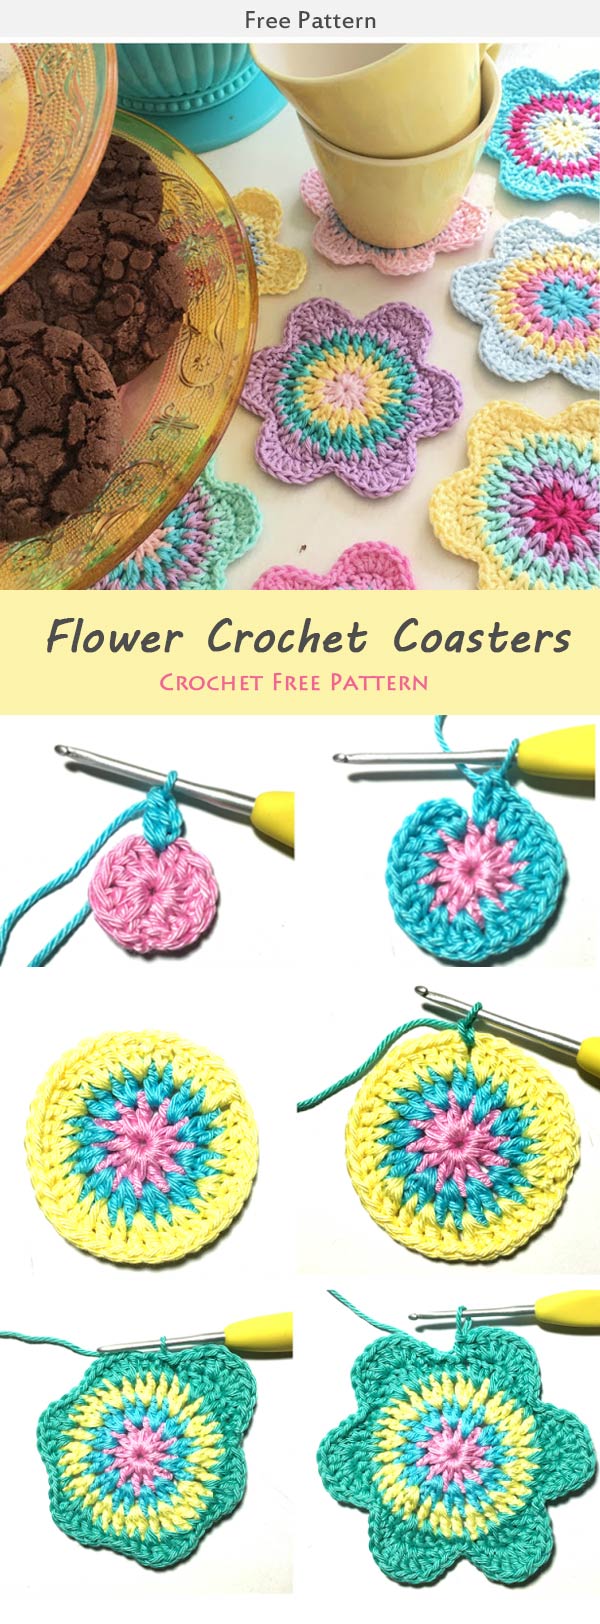 Flower Crochet Coasters Crochet Free Pattern